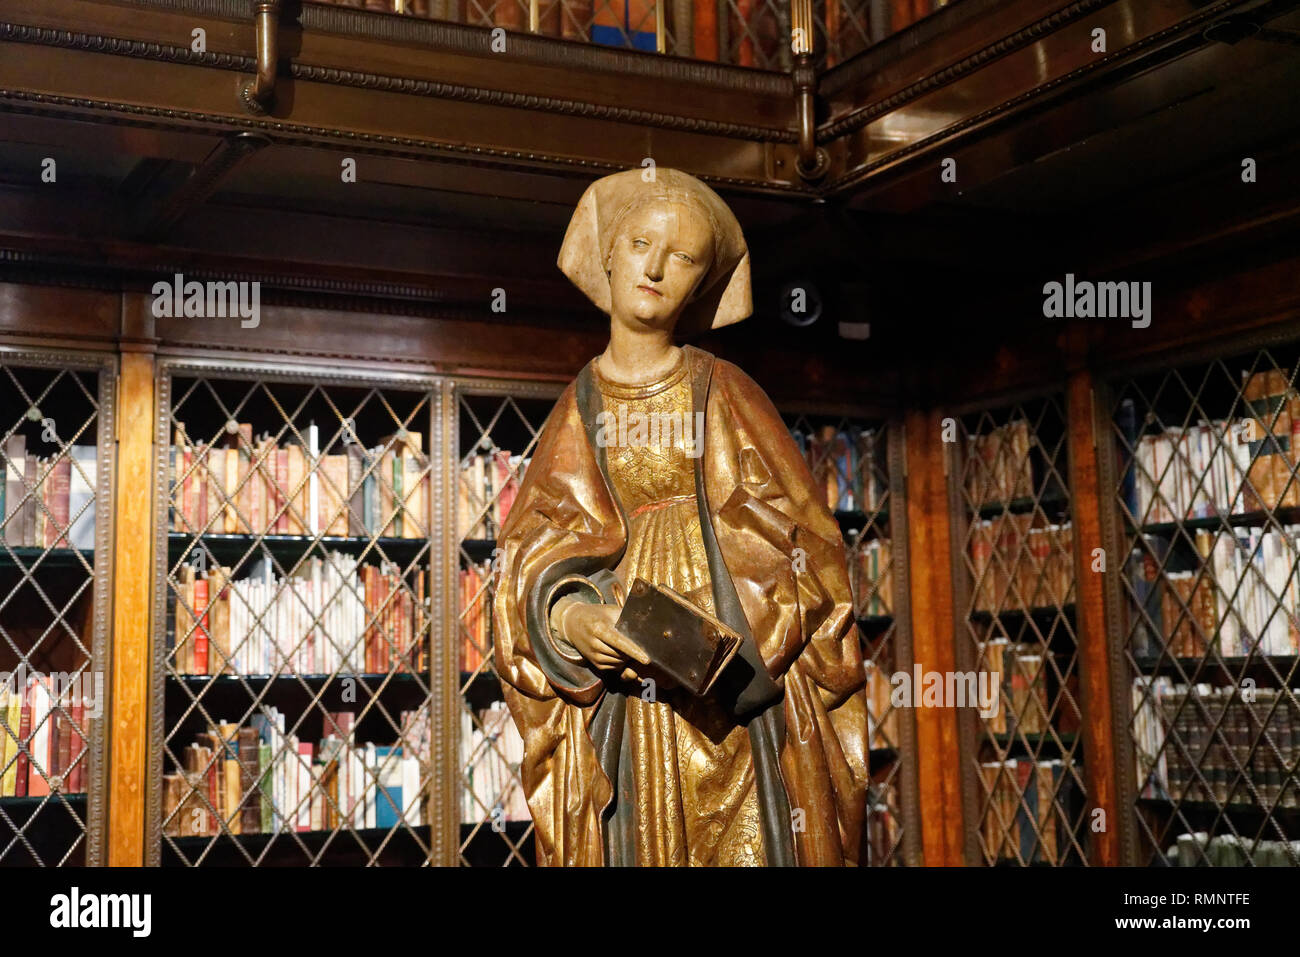 Un Allemand du 16e siècle statue de Saint Elizabeth tenant un livre est dans un coin de la bibliothèque à la Morgan Library & Museum. Banque D'Images